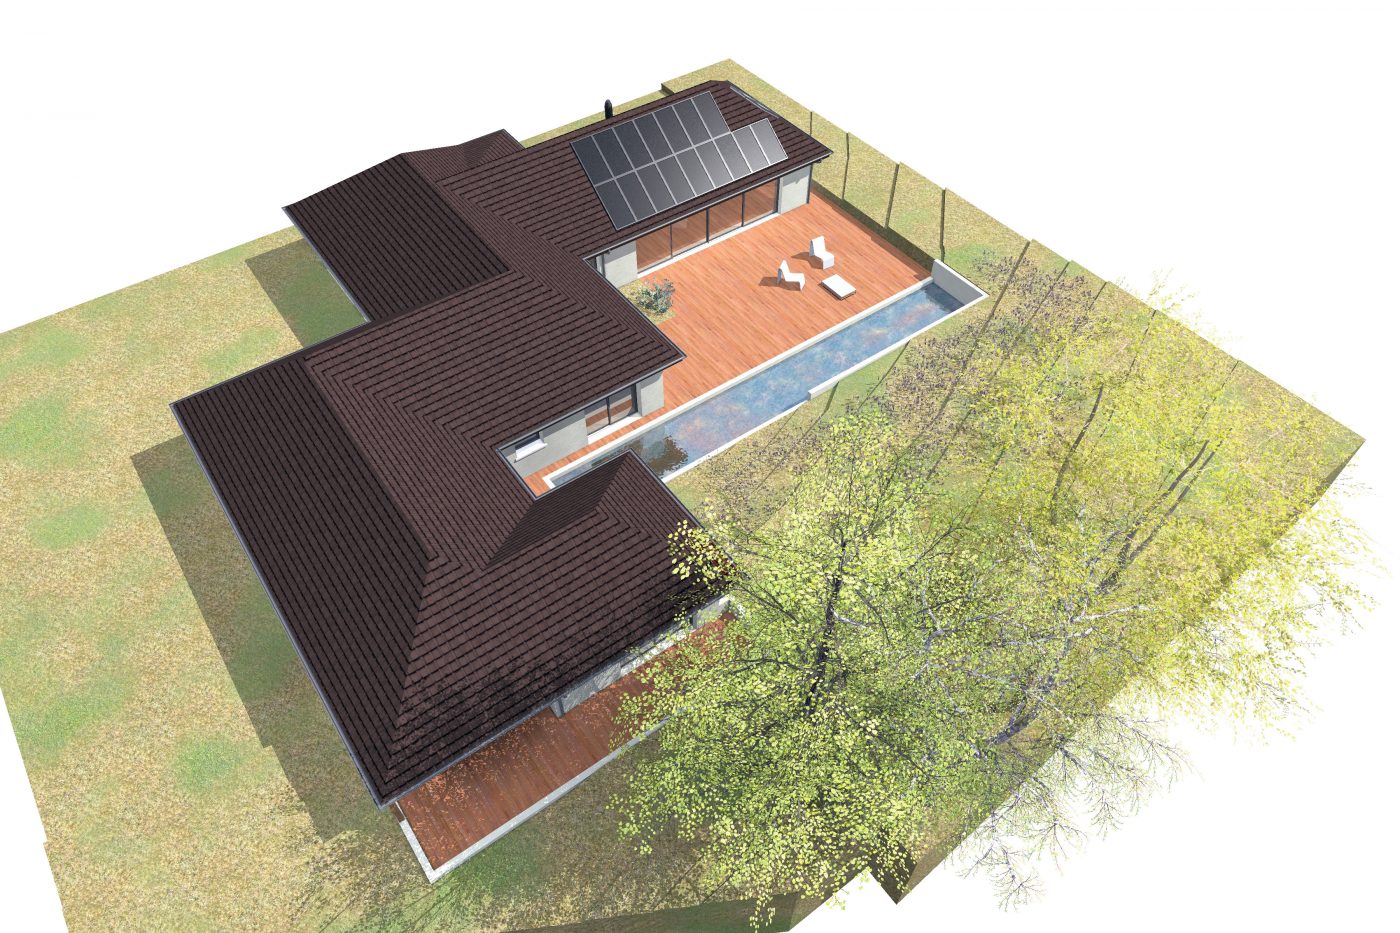 Philippe_Zerbib_Architecte_construction_maisons_ossature_bois_projet_maison_lachaux_View 0_5#0